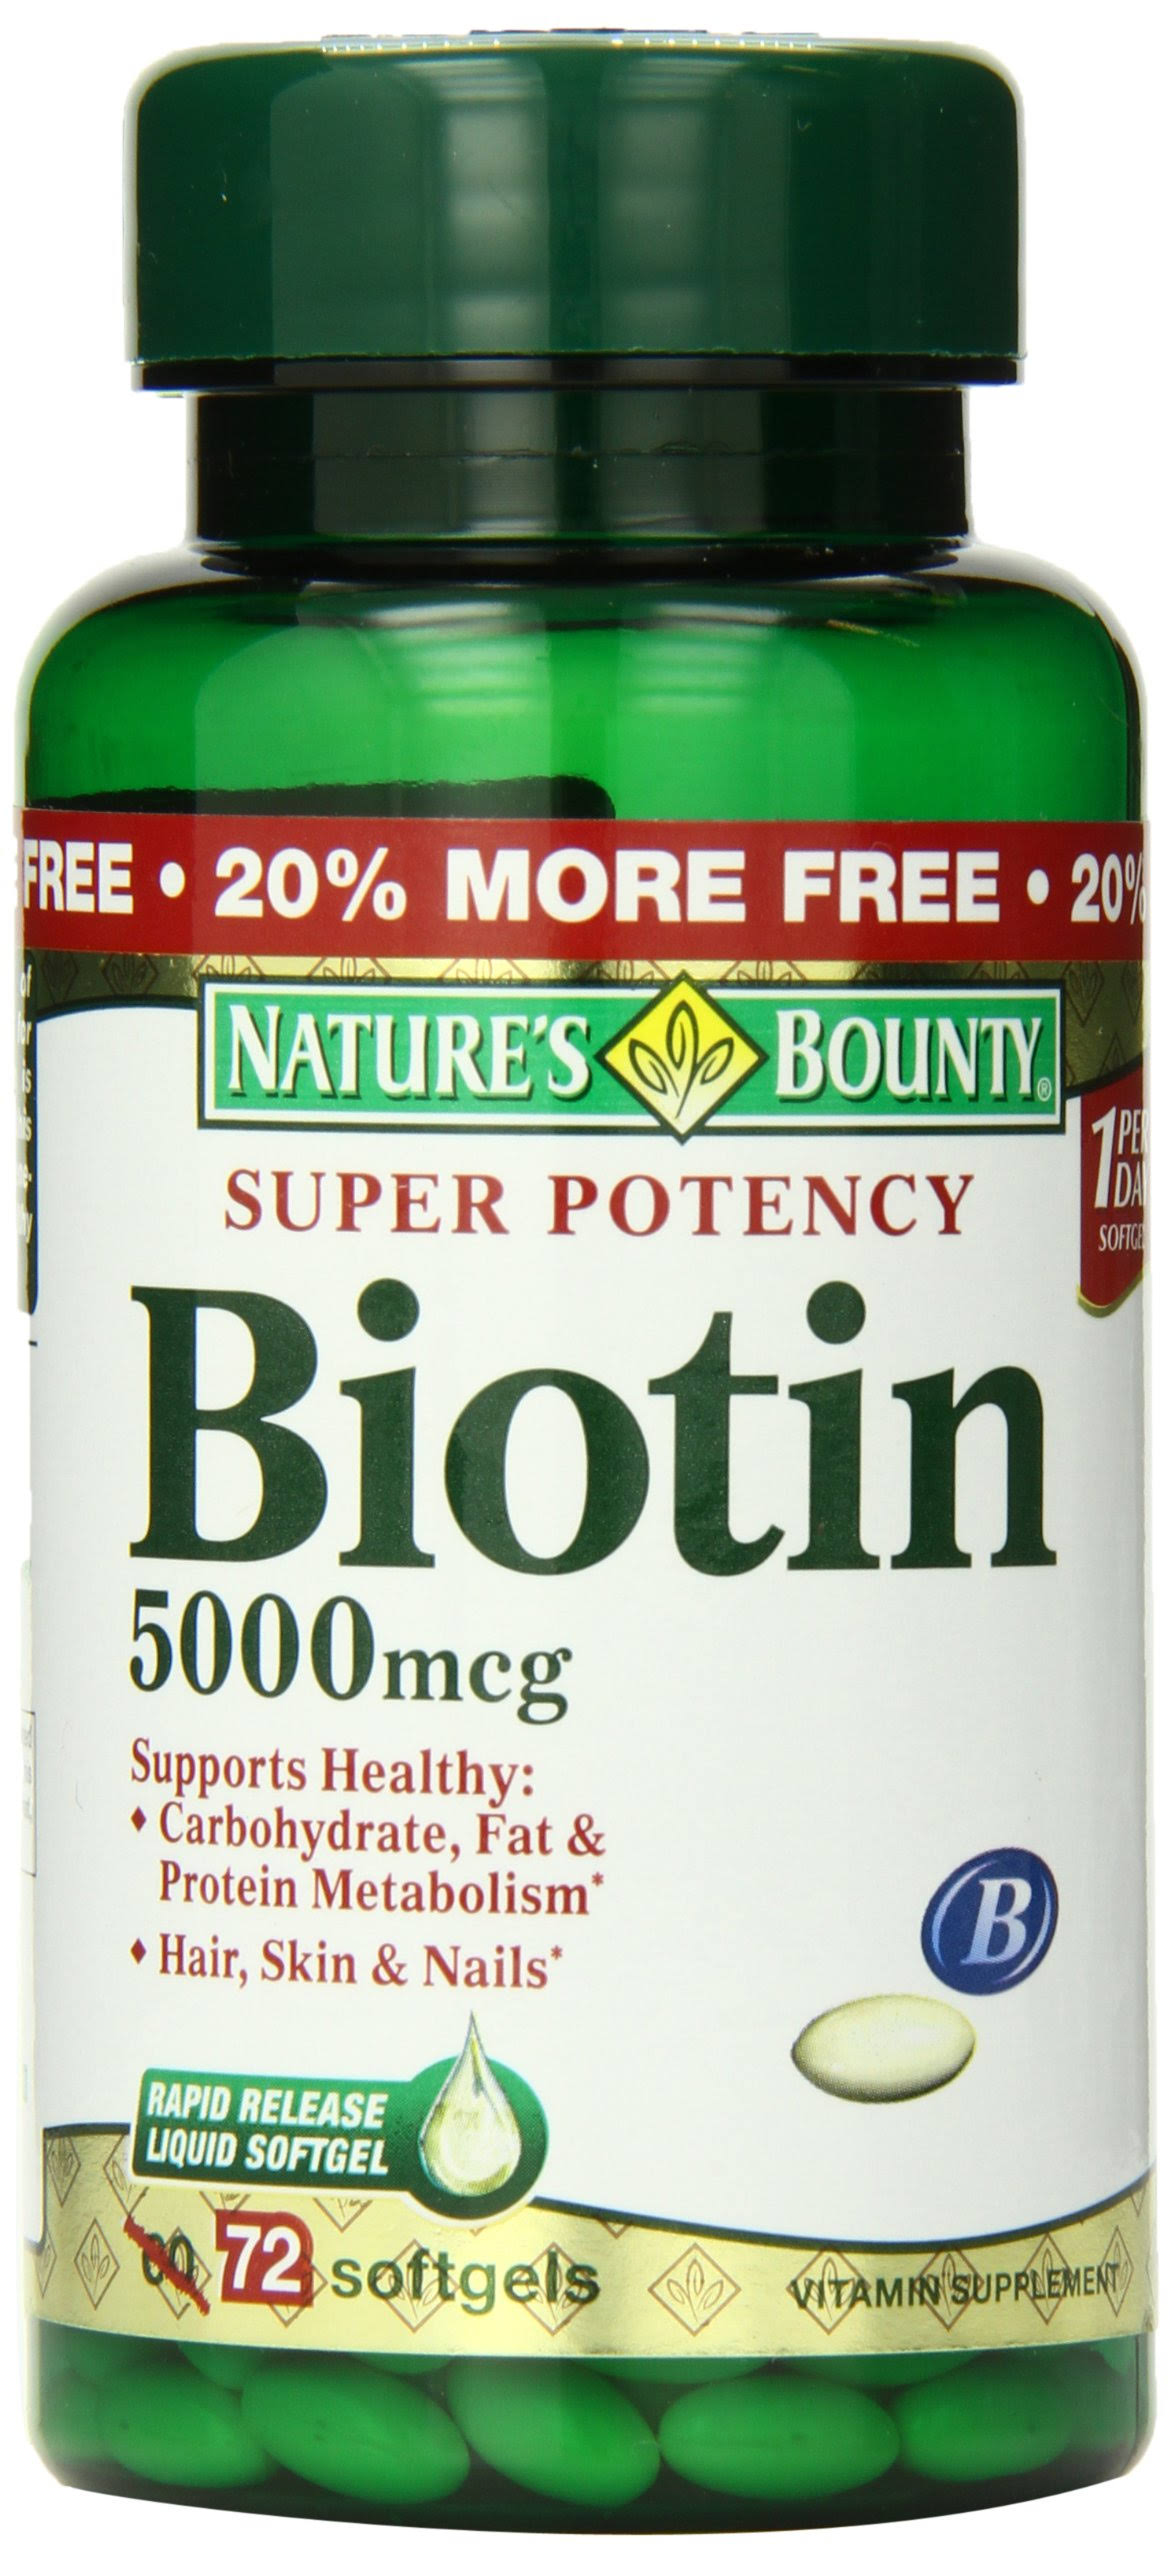 Nature's Bounty Super Potency Biotin Supplement - 5000mcg, 72 Count